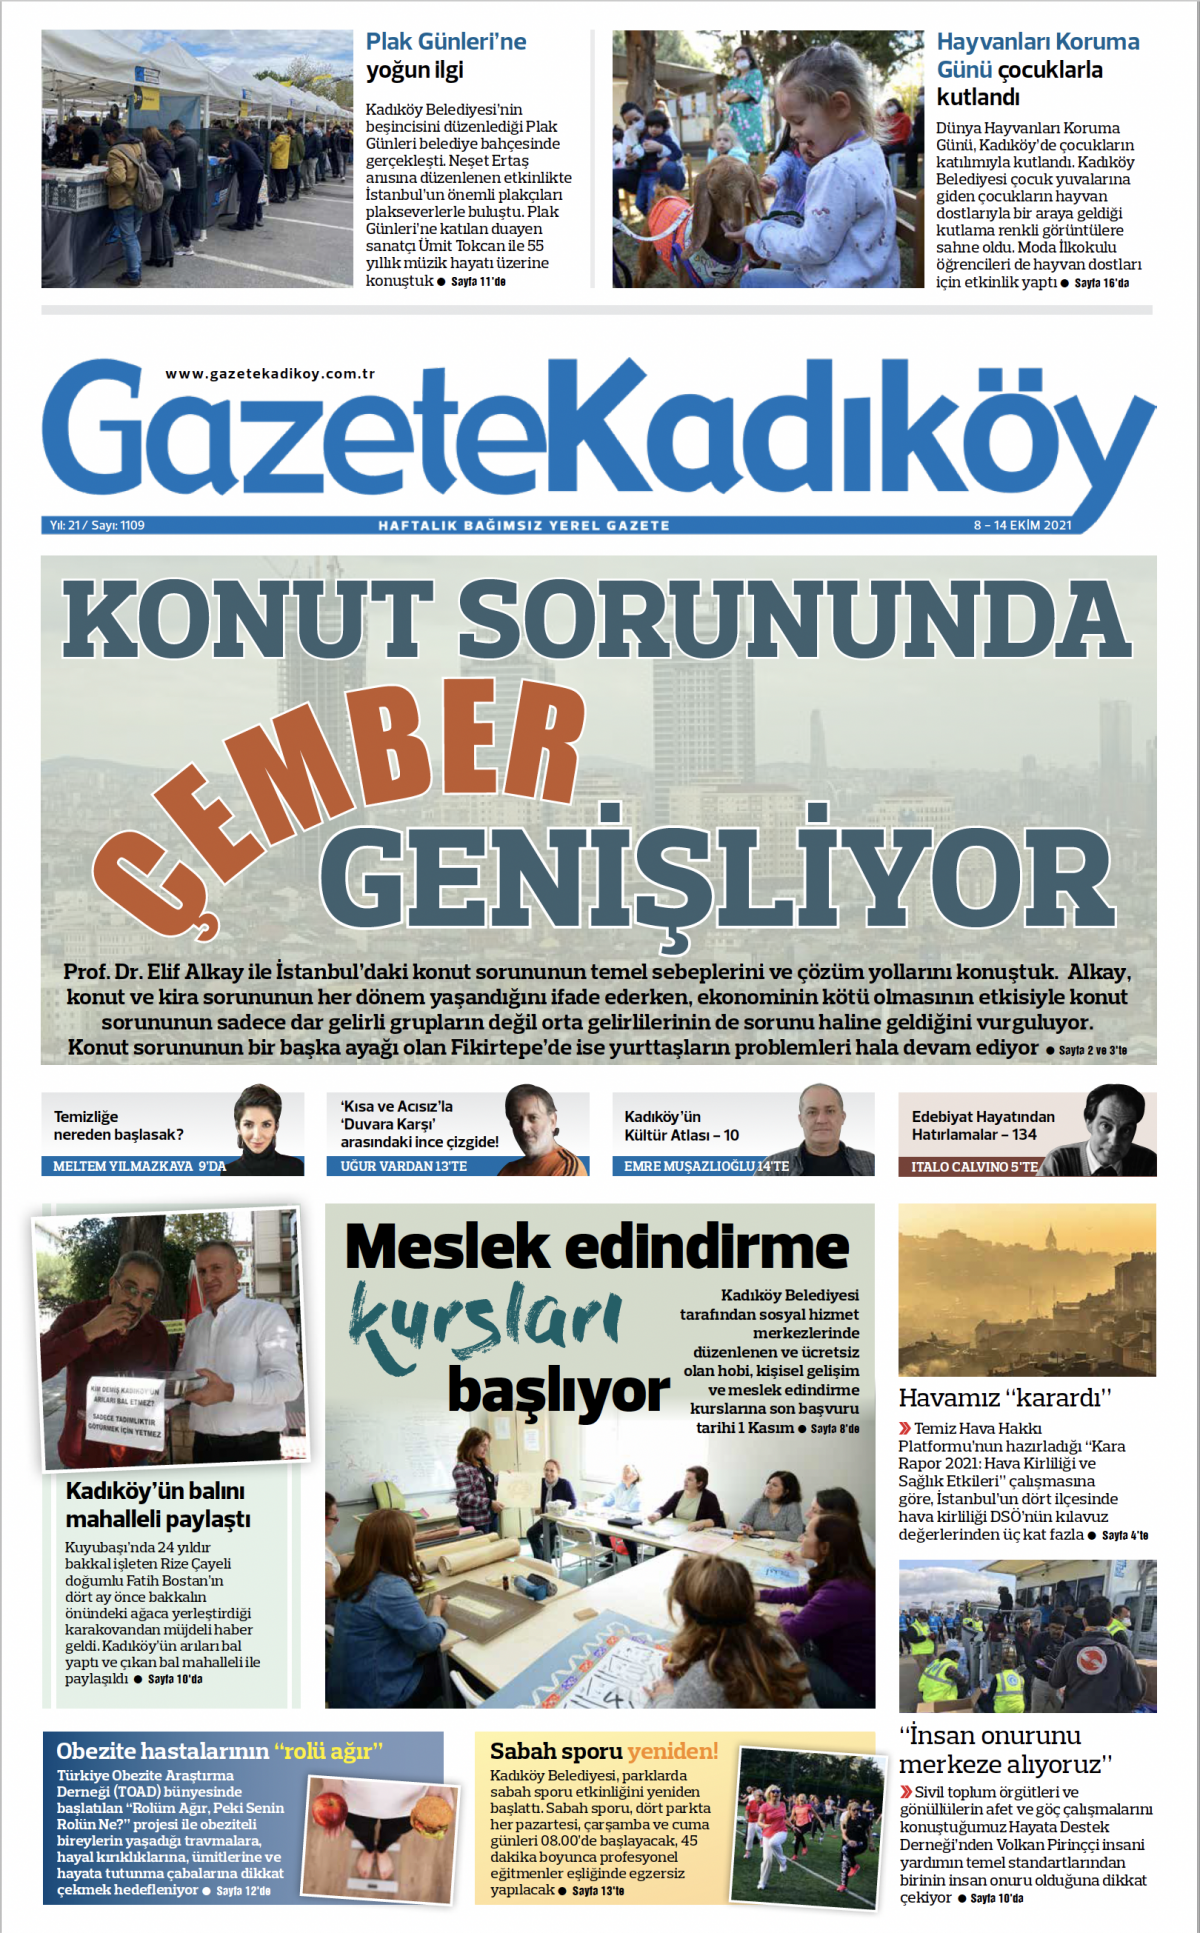 Gazete Kadıköy - 1109. Sayı